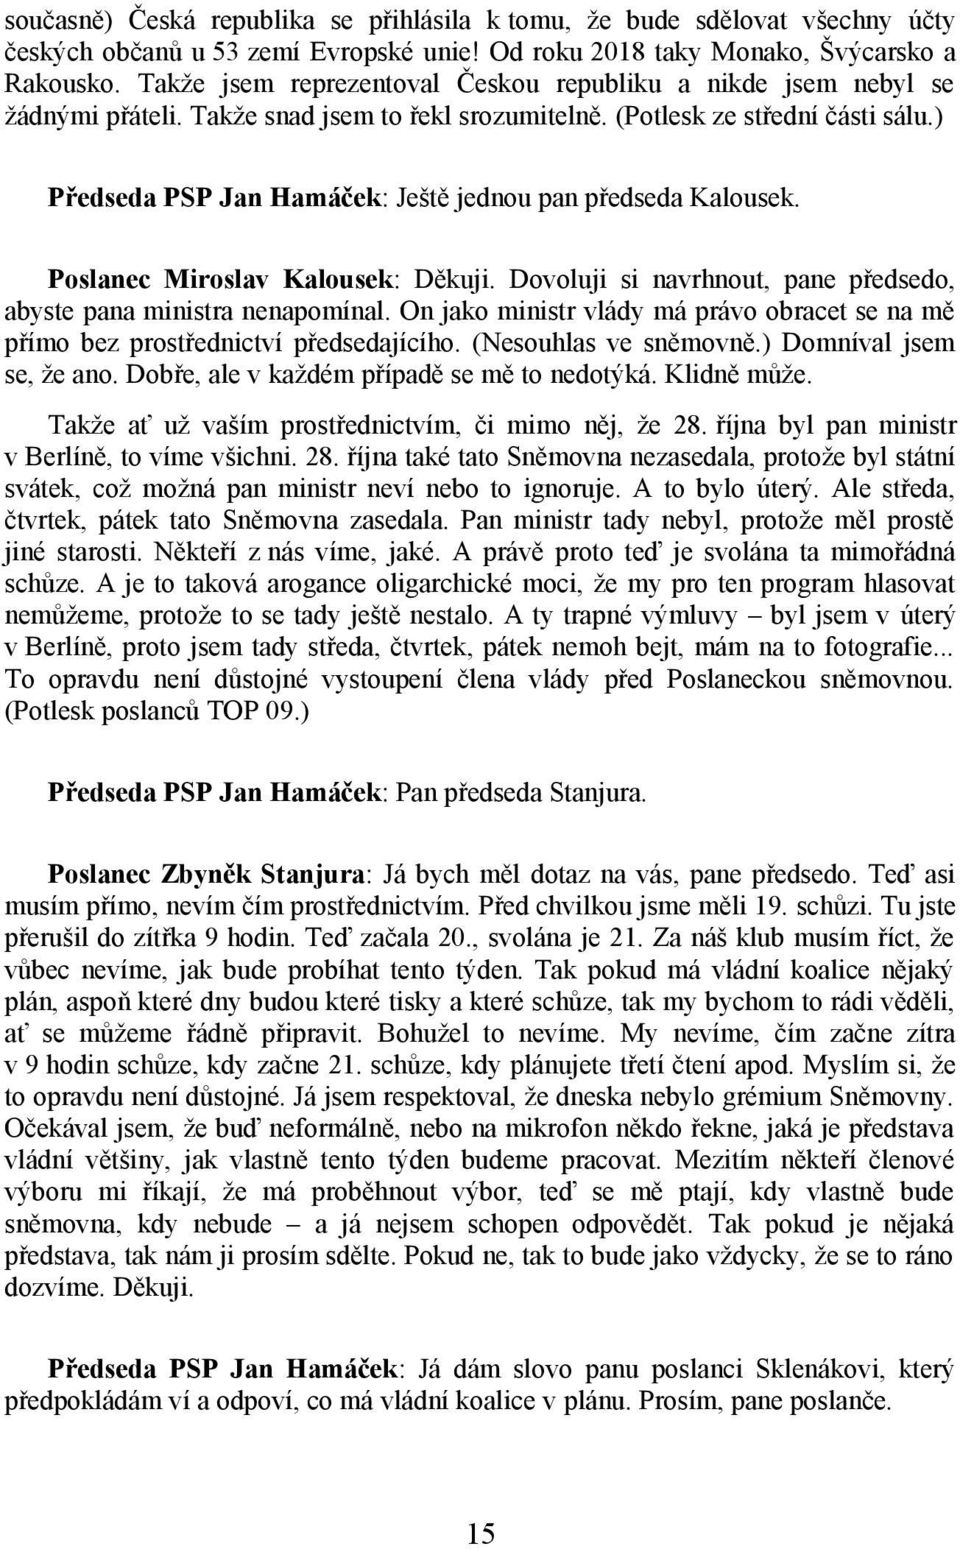 ) Předseda PSP Jan Hamáček: Ještě jednou pan předseda Kalousek. Poslanec Miroslav Kalousek: Děkuji. Dovoluji si navrhnout, pane předsedo, abyste pana ministra nenapomínal.